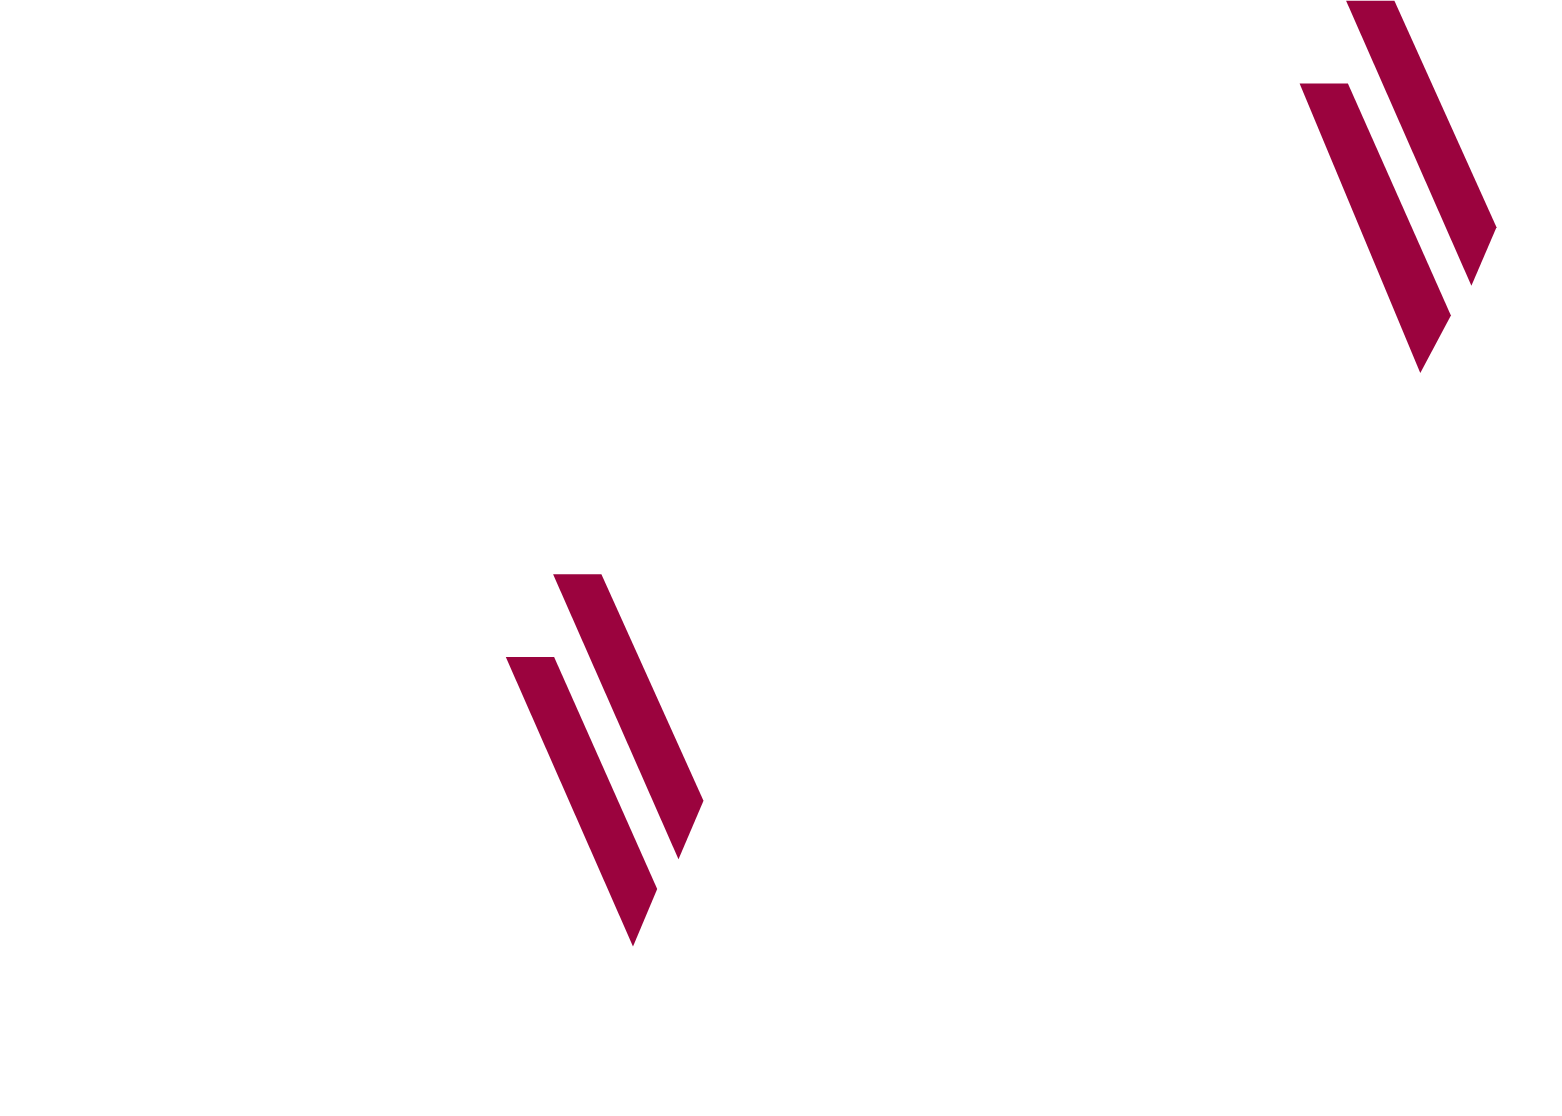 Al Imtiaz Investment Group Company logo grand pour les fonds sombres (PNG transparent)